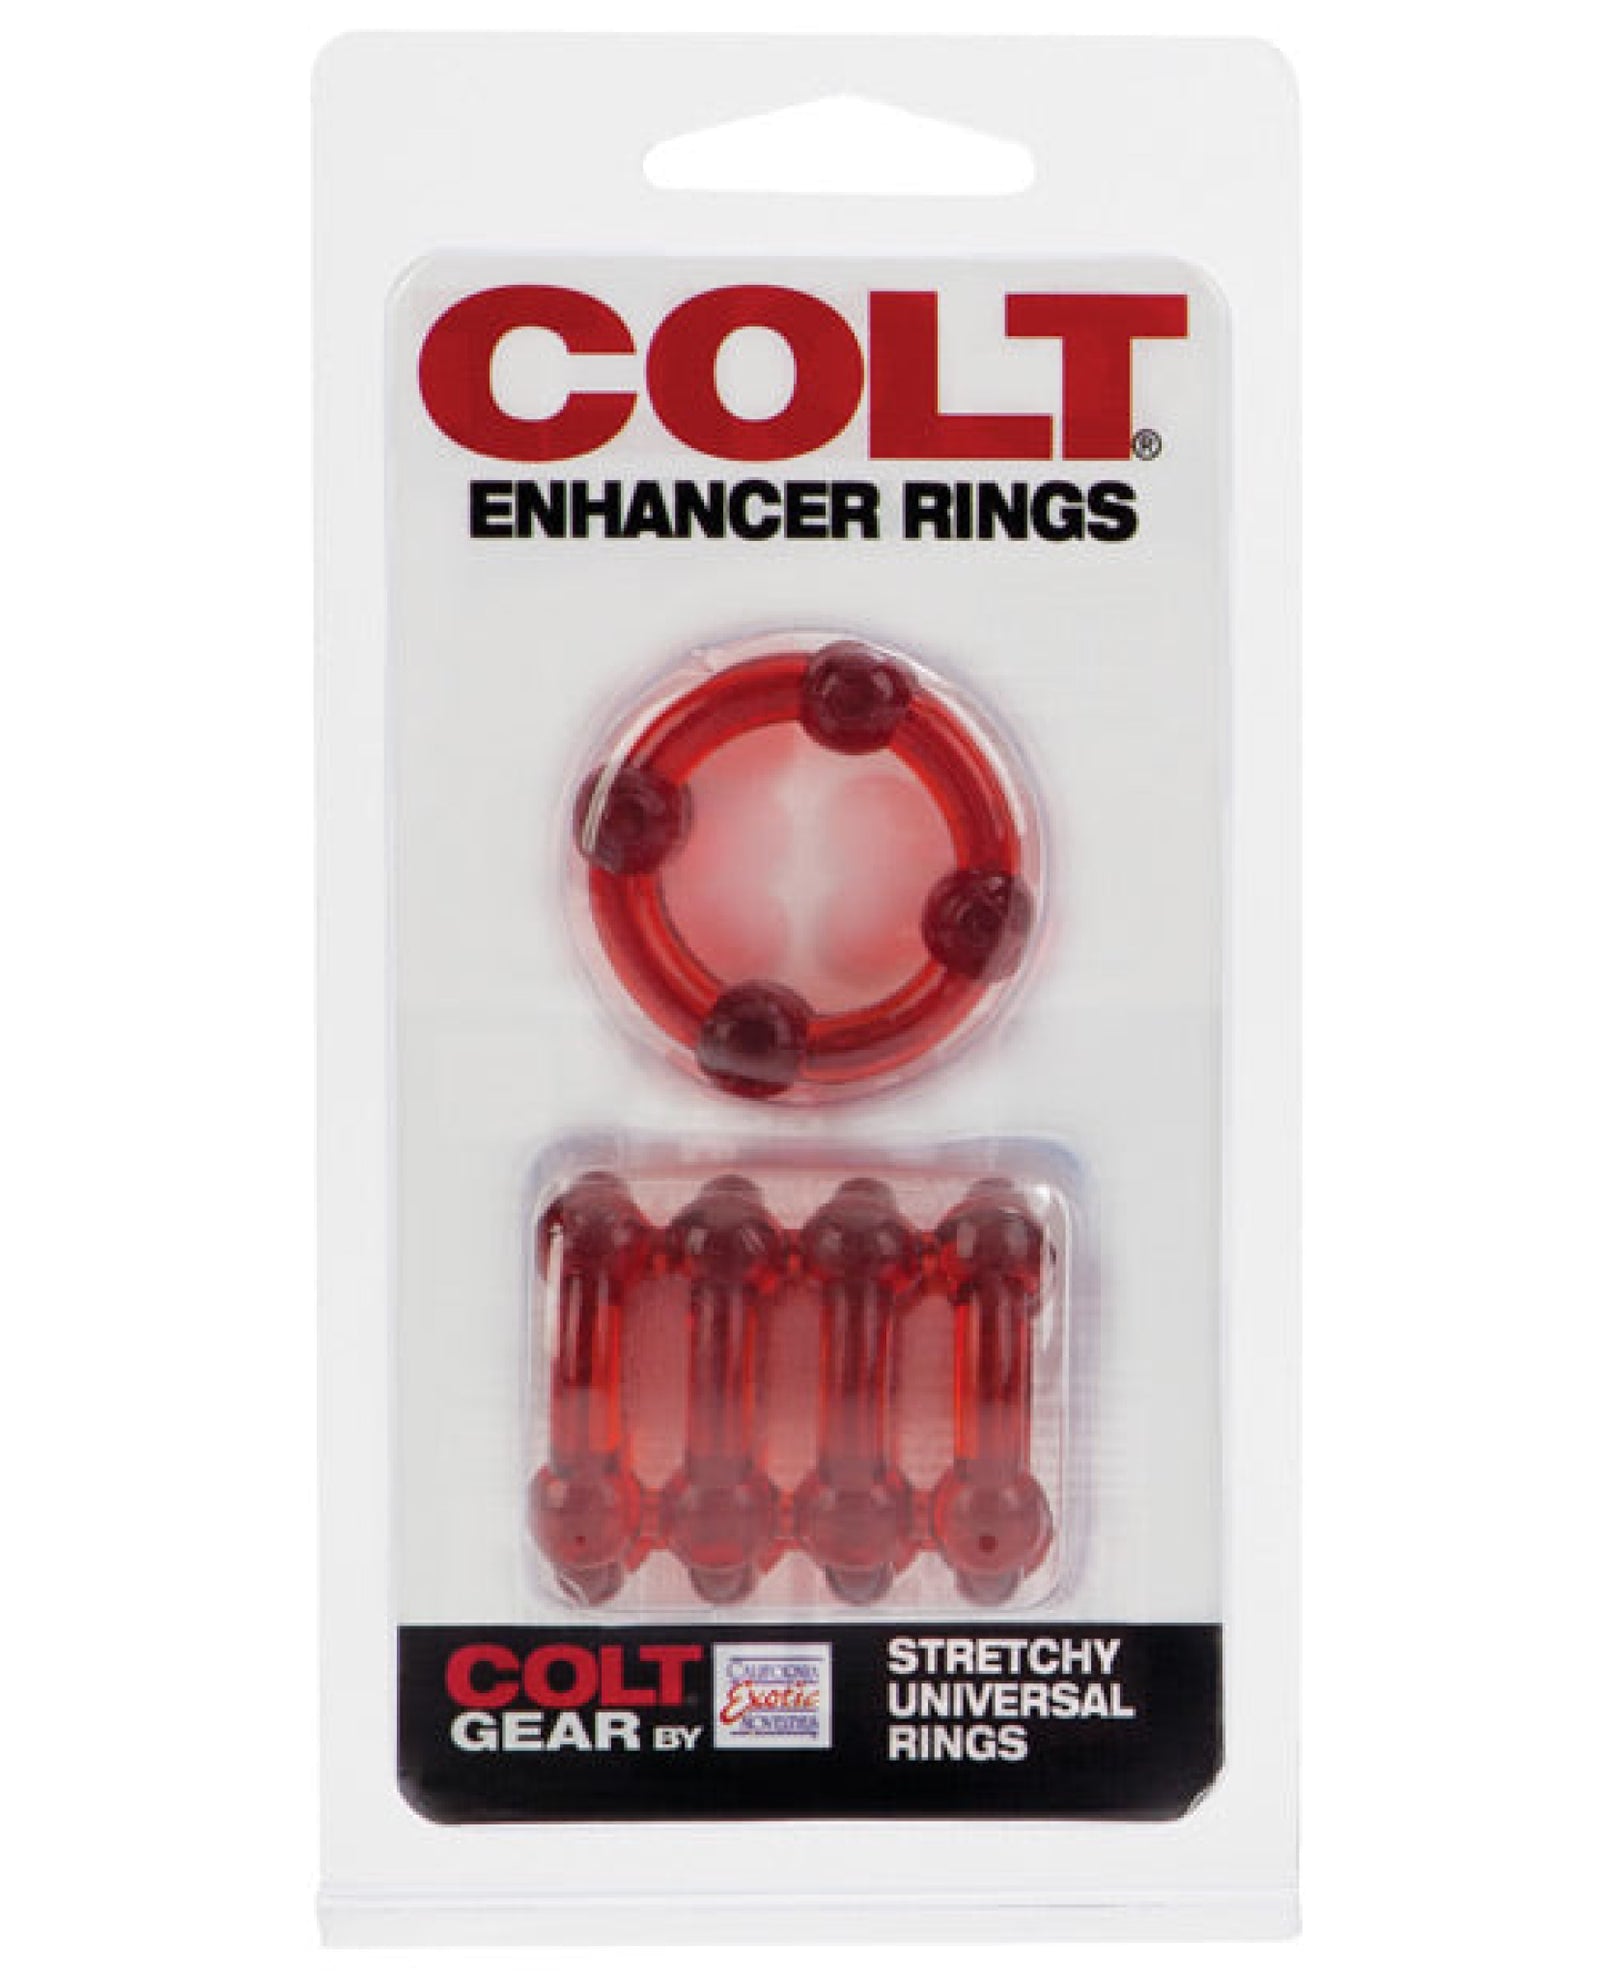 Colt Enhancer Rings California Exotic Novelties